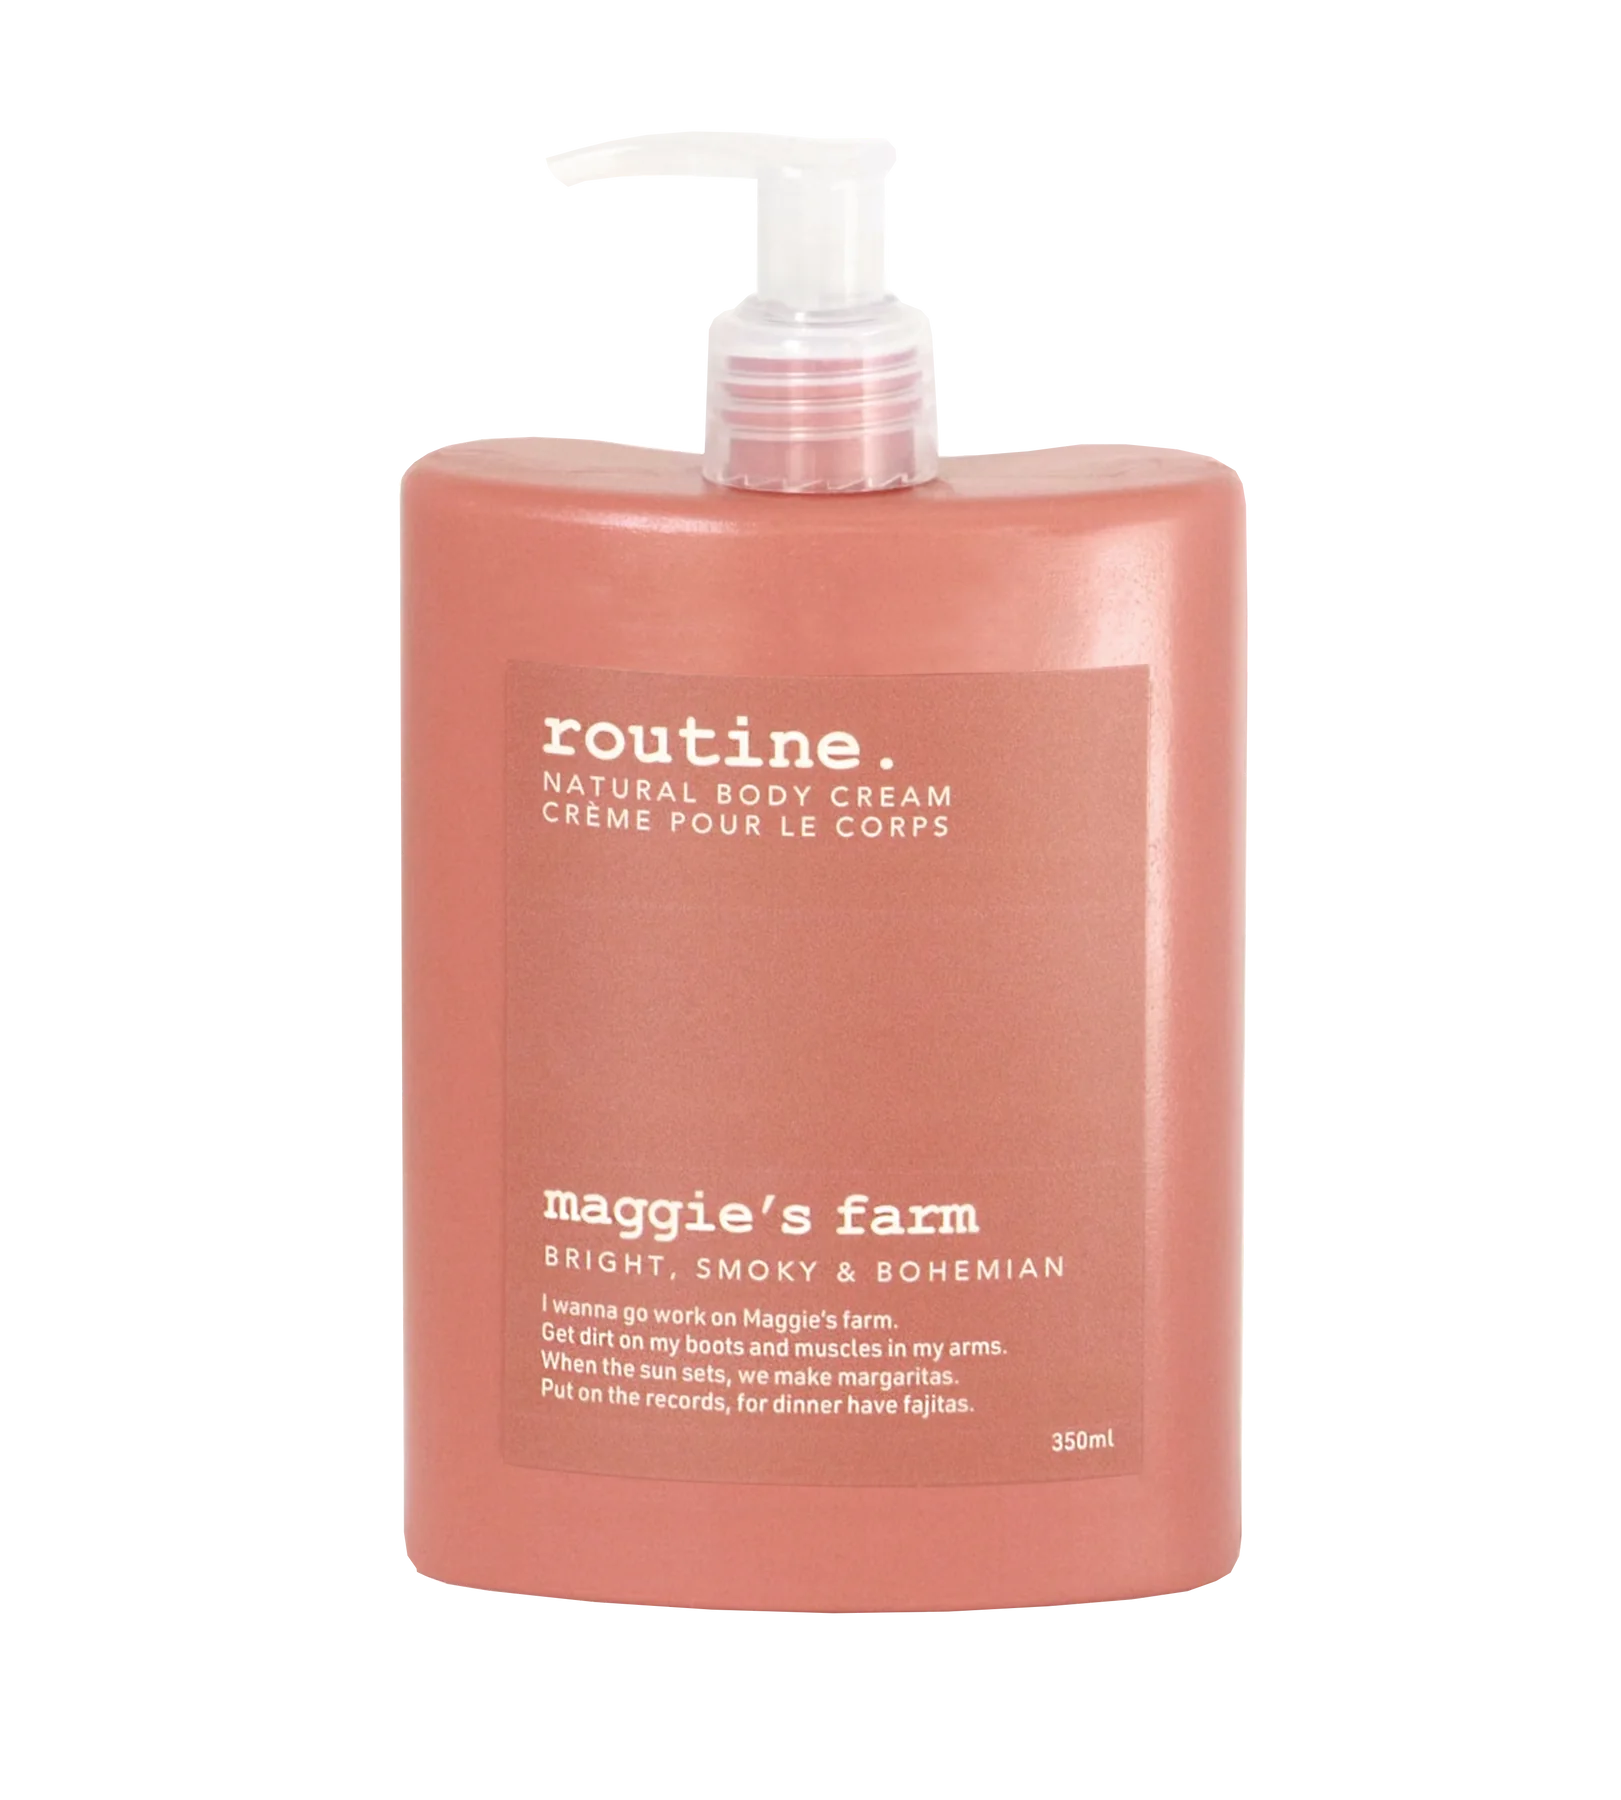 Routine | Maggie's Farm Natural Body Cream